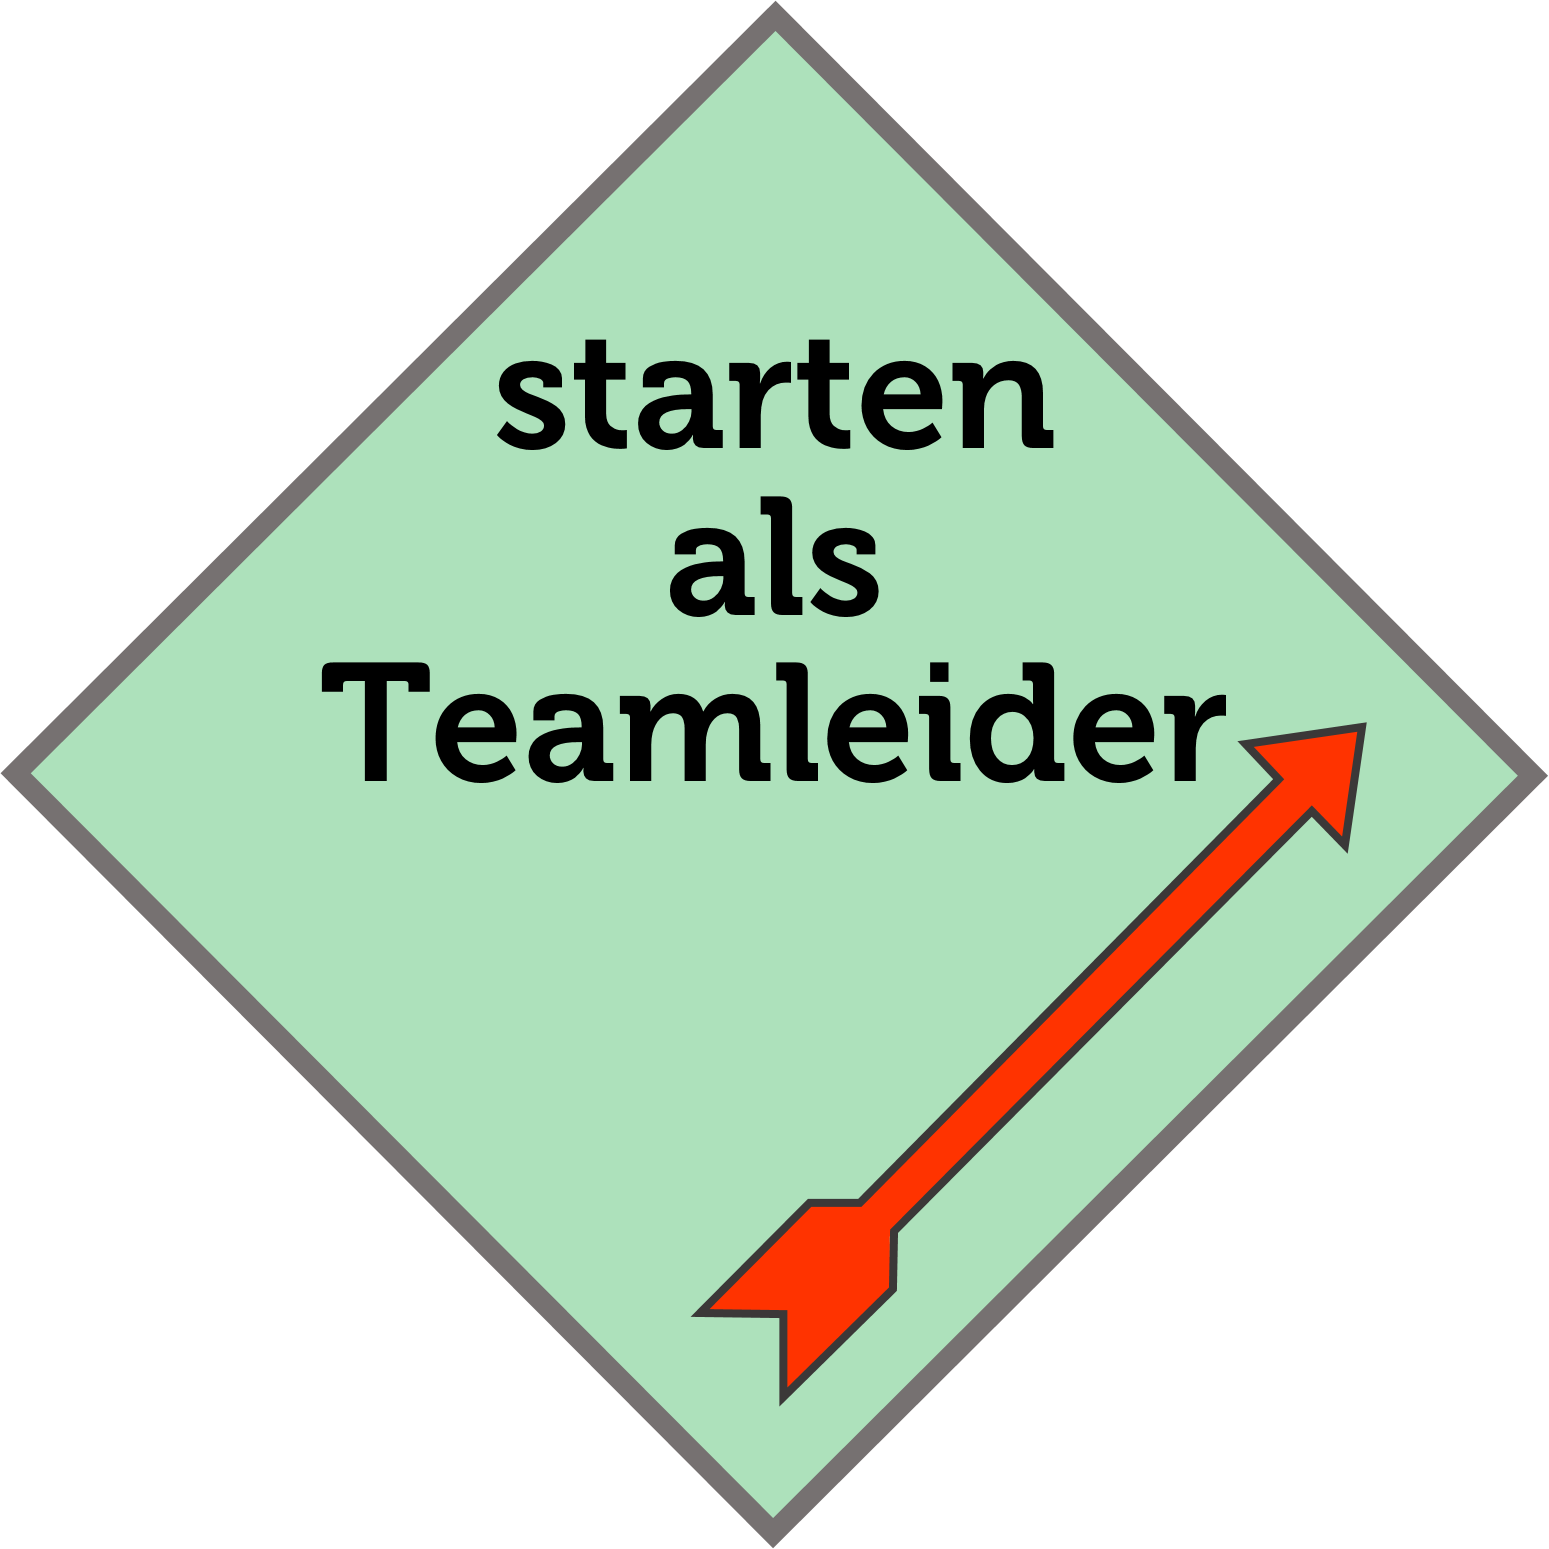 Starten als Teamleider_logo